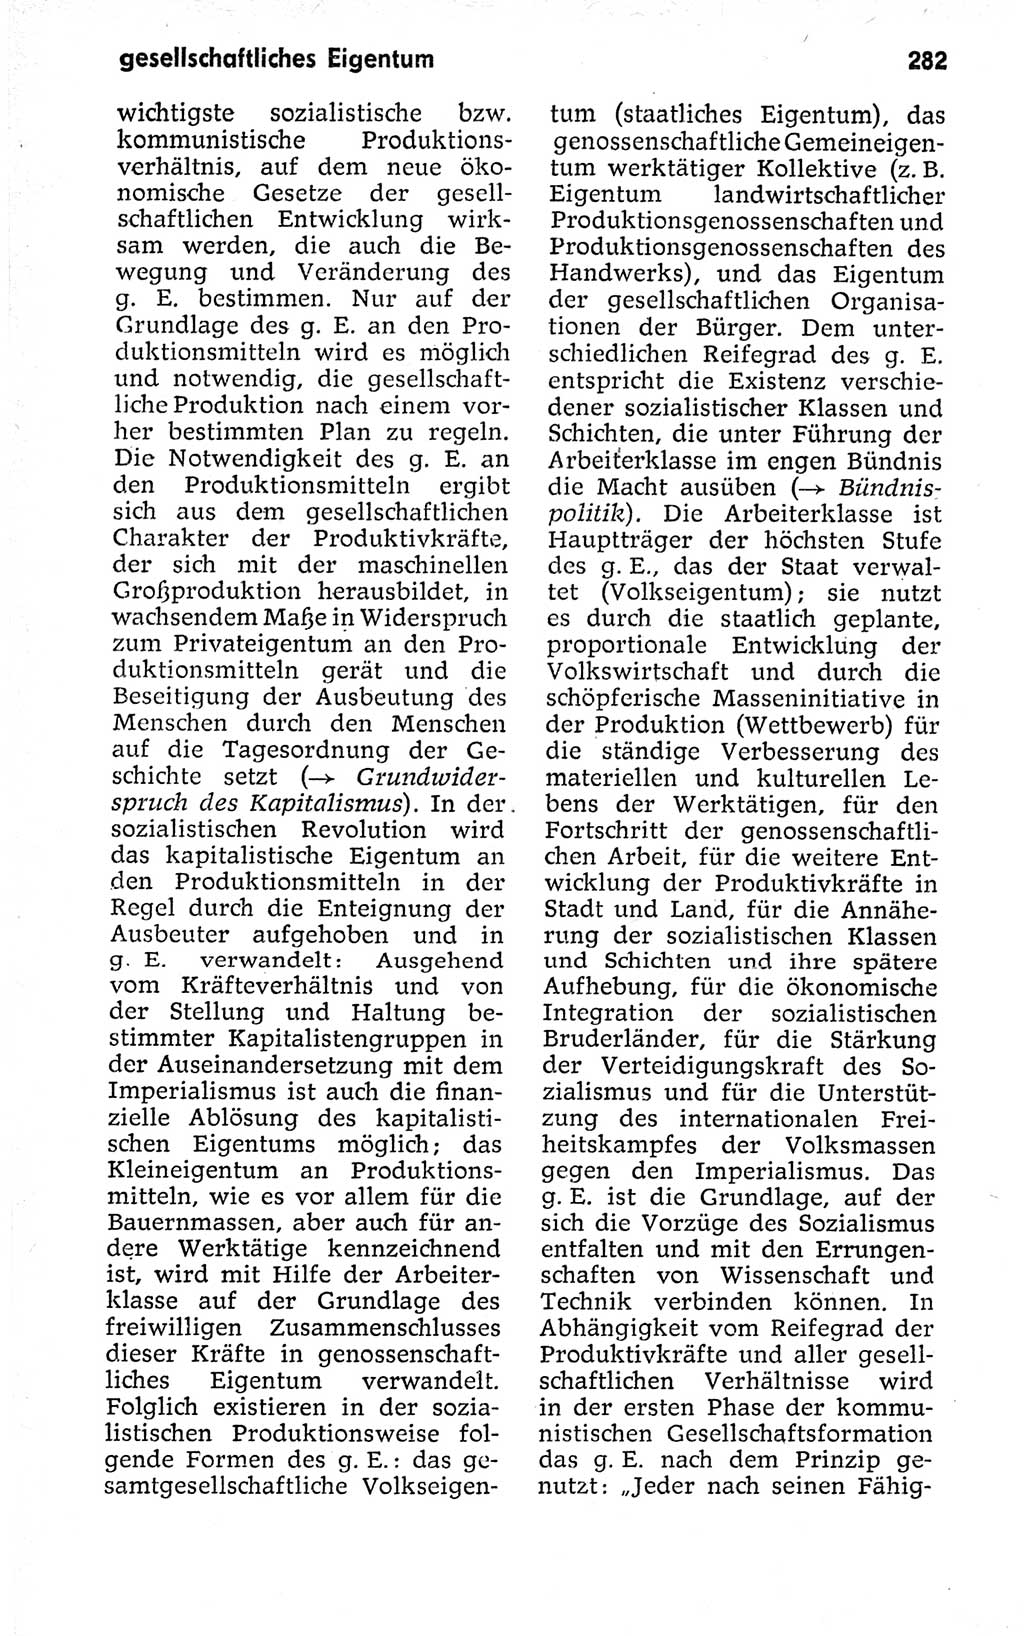 Kleines politisches Wörterbuch [Deutsche Demokratische Republik (DDR)] 1973, Seite 282 (Kl. pol. Wb. DDR 1973, S. 282)